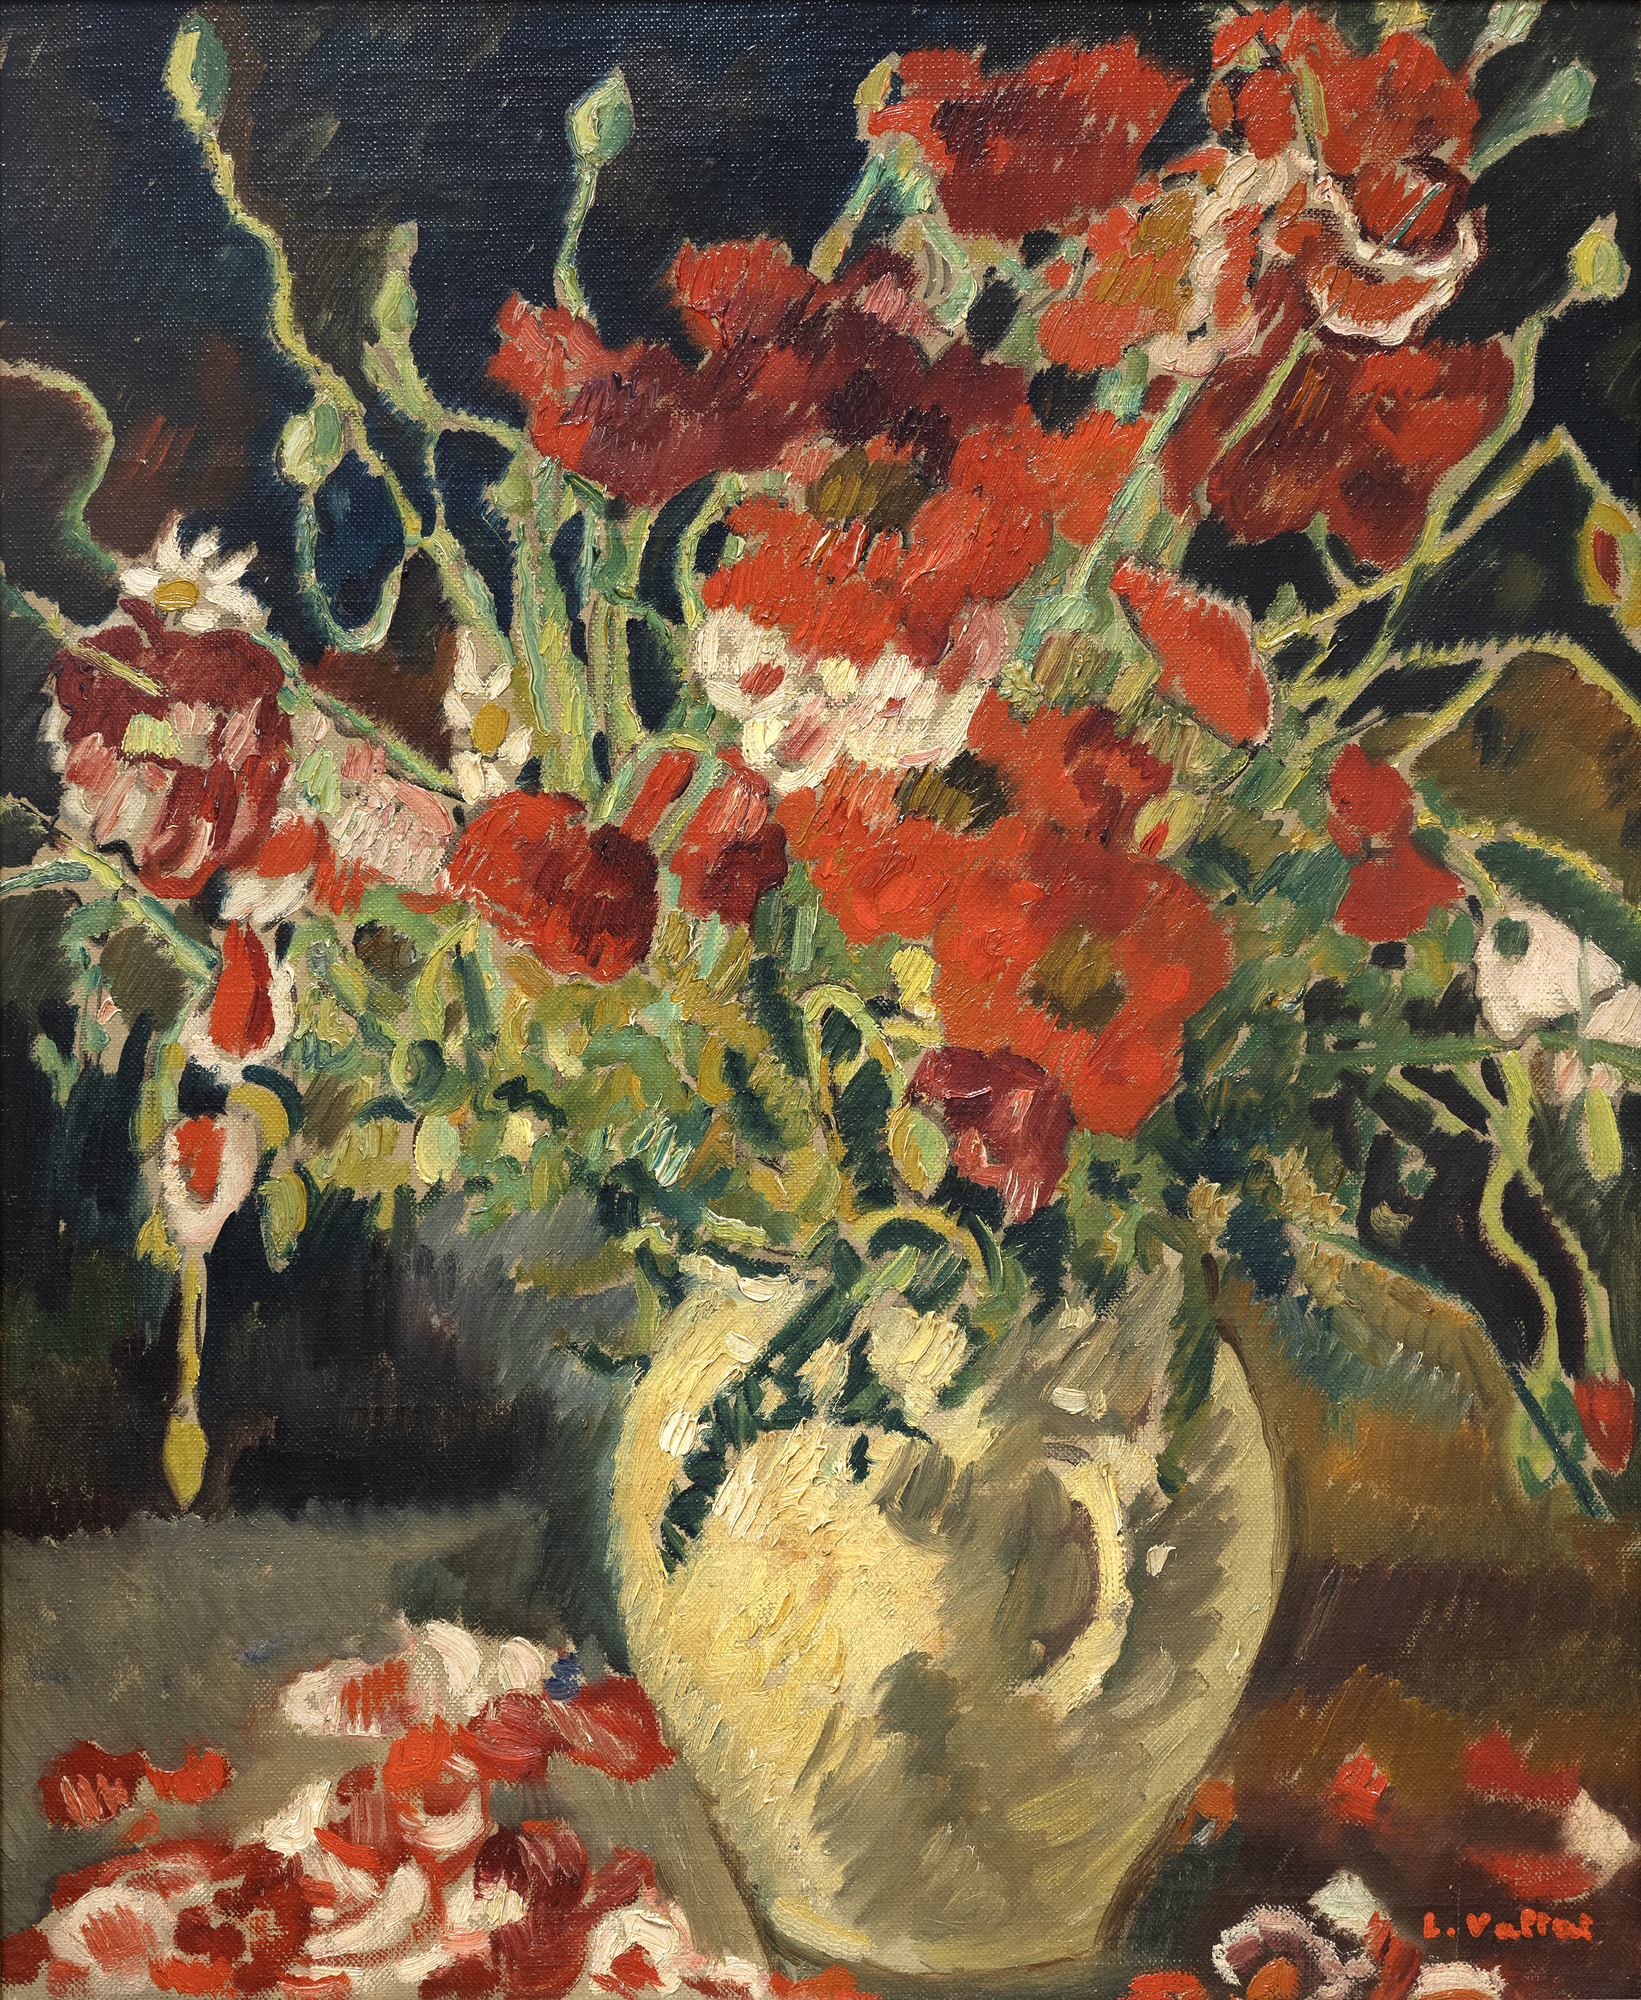 LOUIS VALTAT - コクリコの花瓶 - キャンバスに油彩 - 23 1/2 x 19 in.